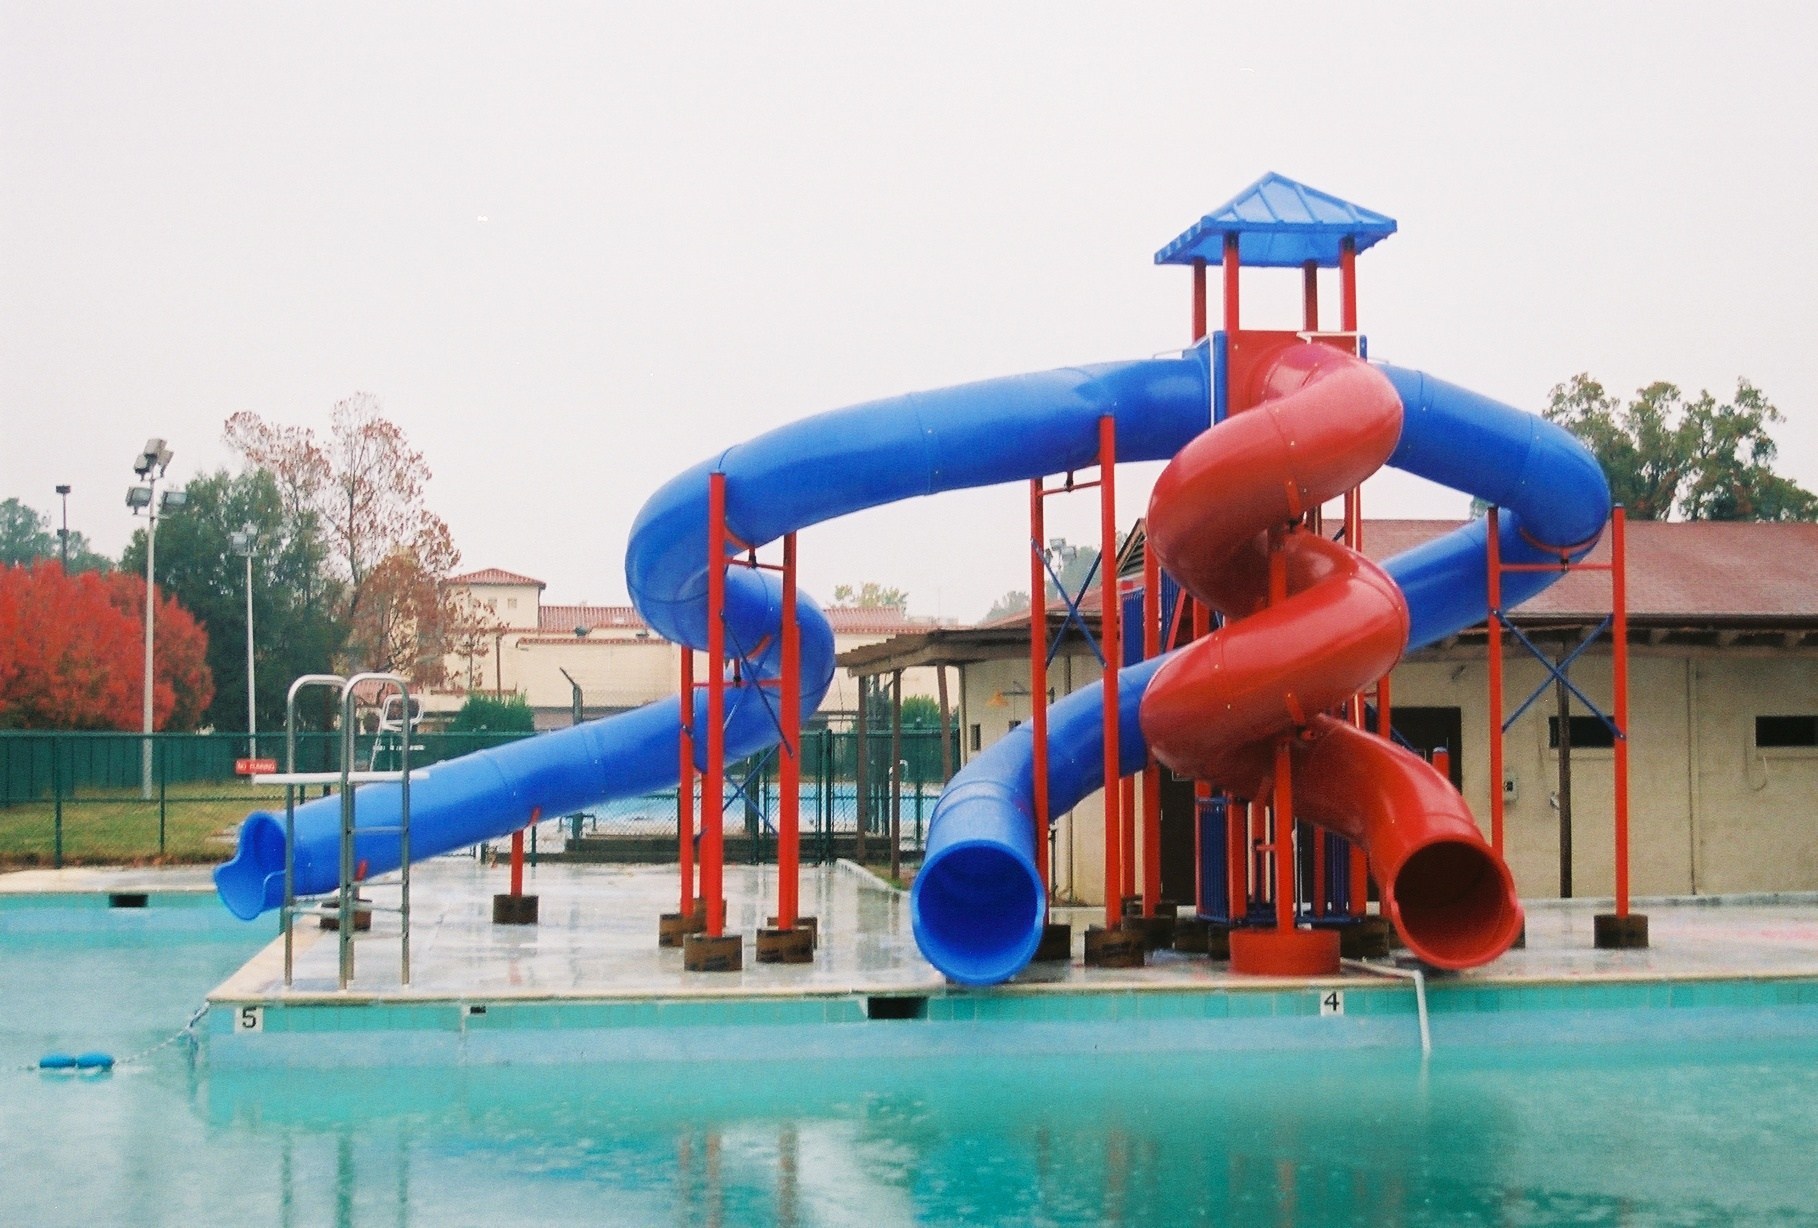 custom slides, water slide, pool slide, lake slide, custom slide, water slides, pool slides, lake slide, dock slide, tube slide, spiral slide, indoor slide, indoor slides.